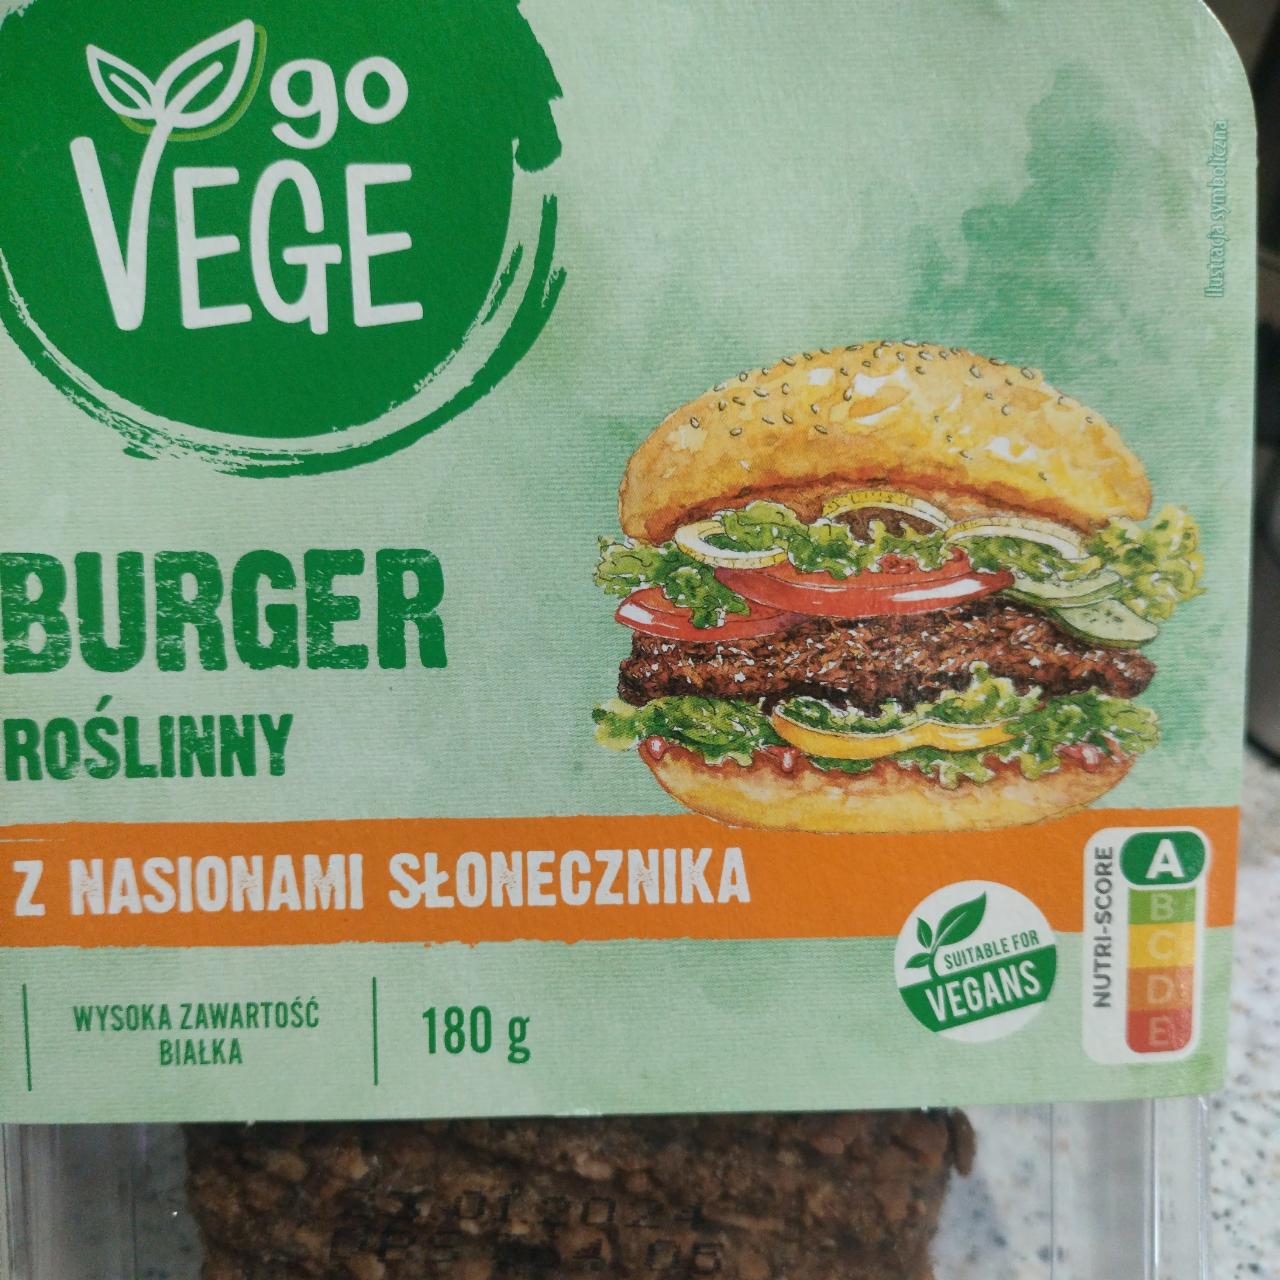 Zdjęcia - Burger Roślinny z nasionami słonecznika Go Vege